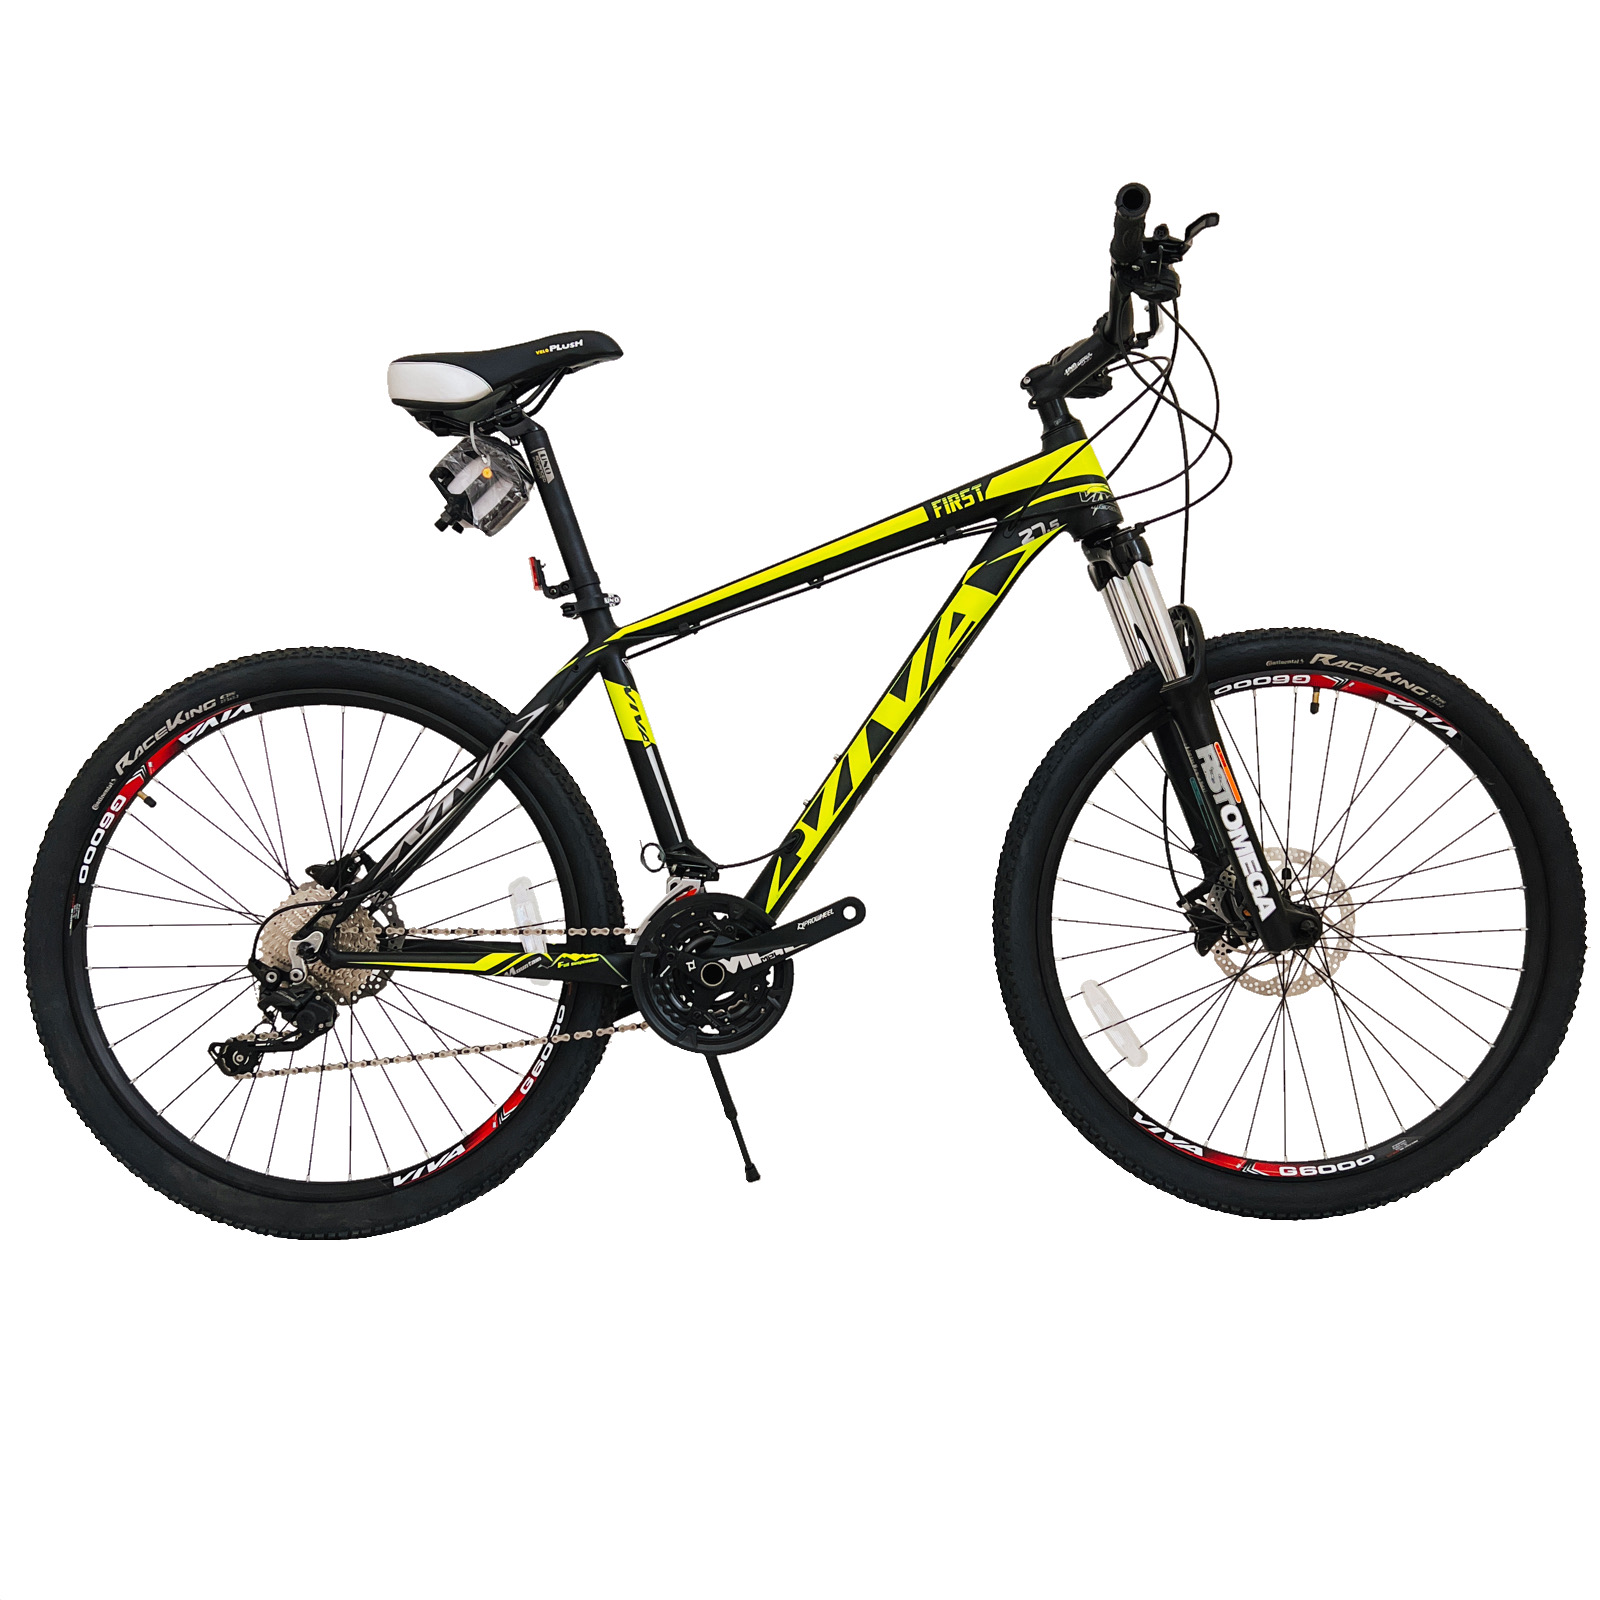 نکته خرید - قیمت روز دوچرخه کوهستان ویوا مدل FIRST کد هیدرولیک 30 سایز طوقه 27.5 خرید